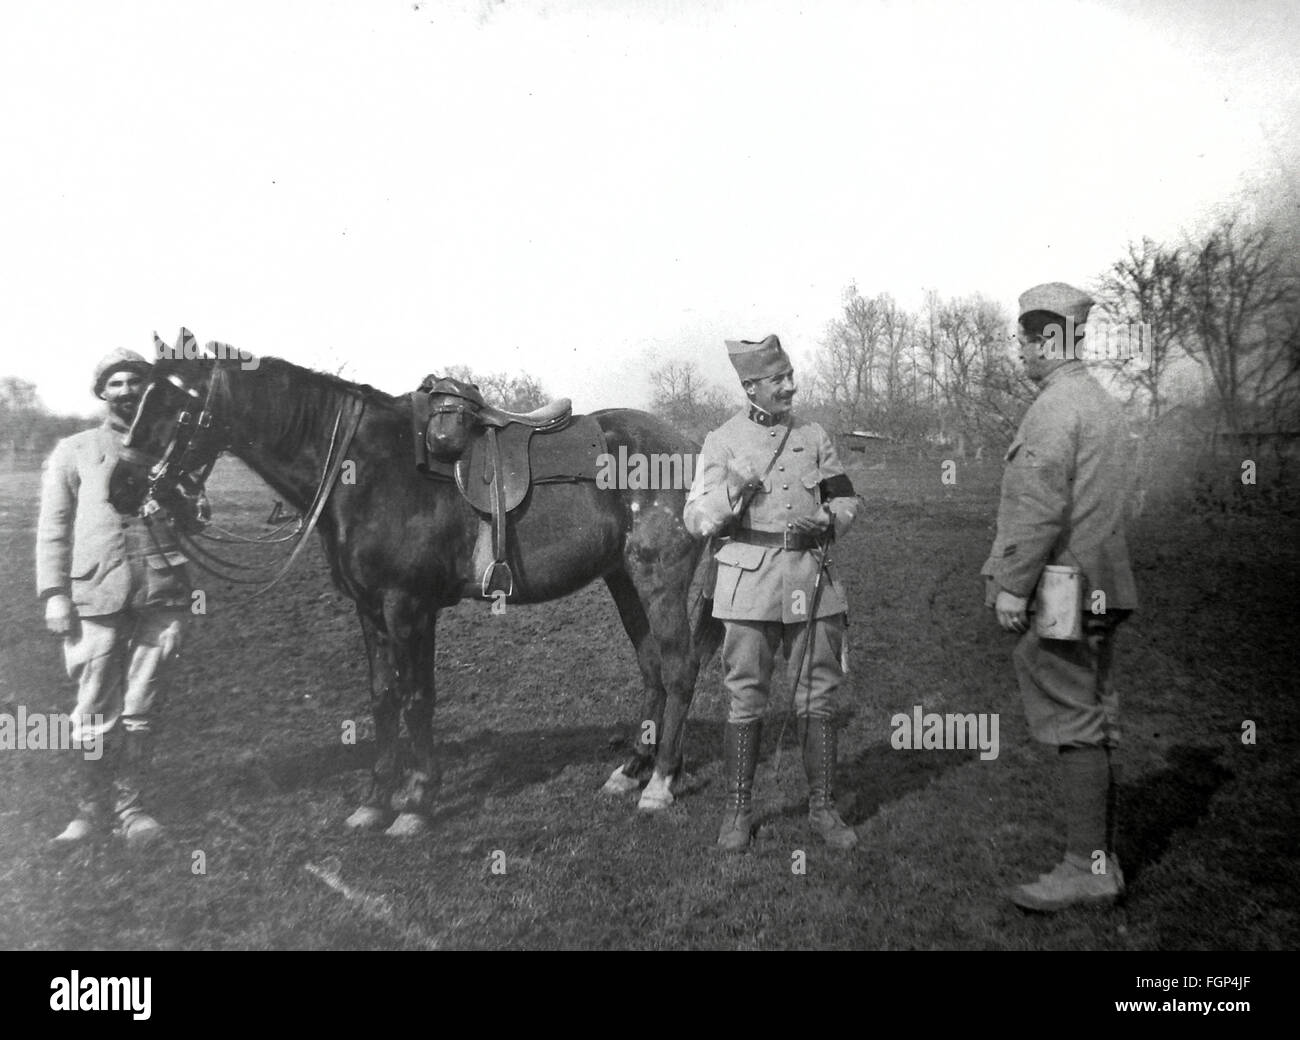 Battaglia di Verdun 1916 - Cavaliere Foto Stock